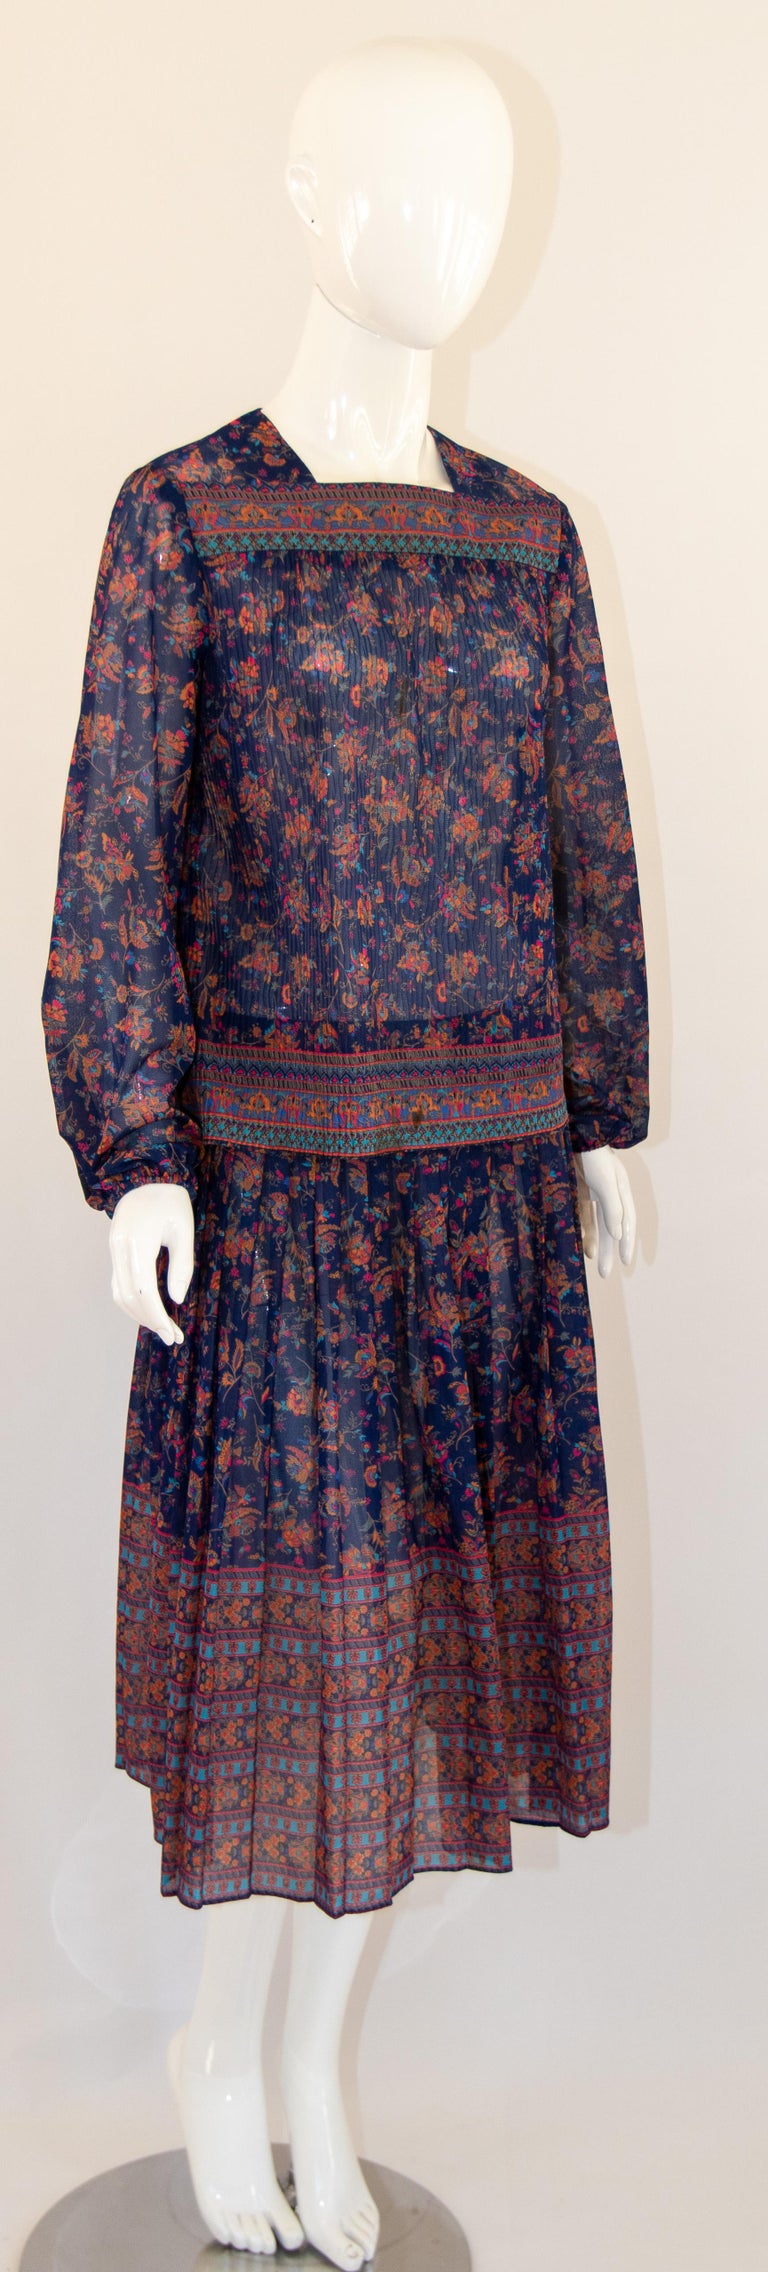 1970s Vintage Bohemian Floral Printed Dress Miss Magnin at I. Magnin For Sale 14